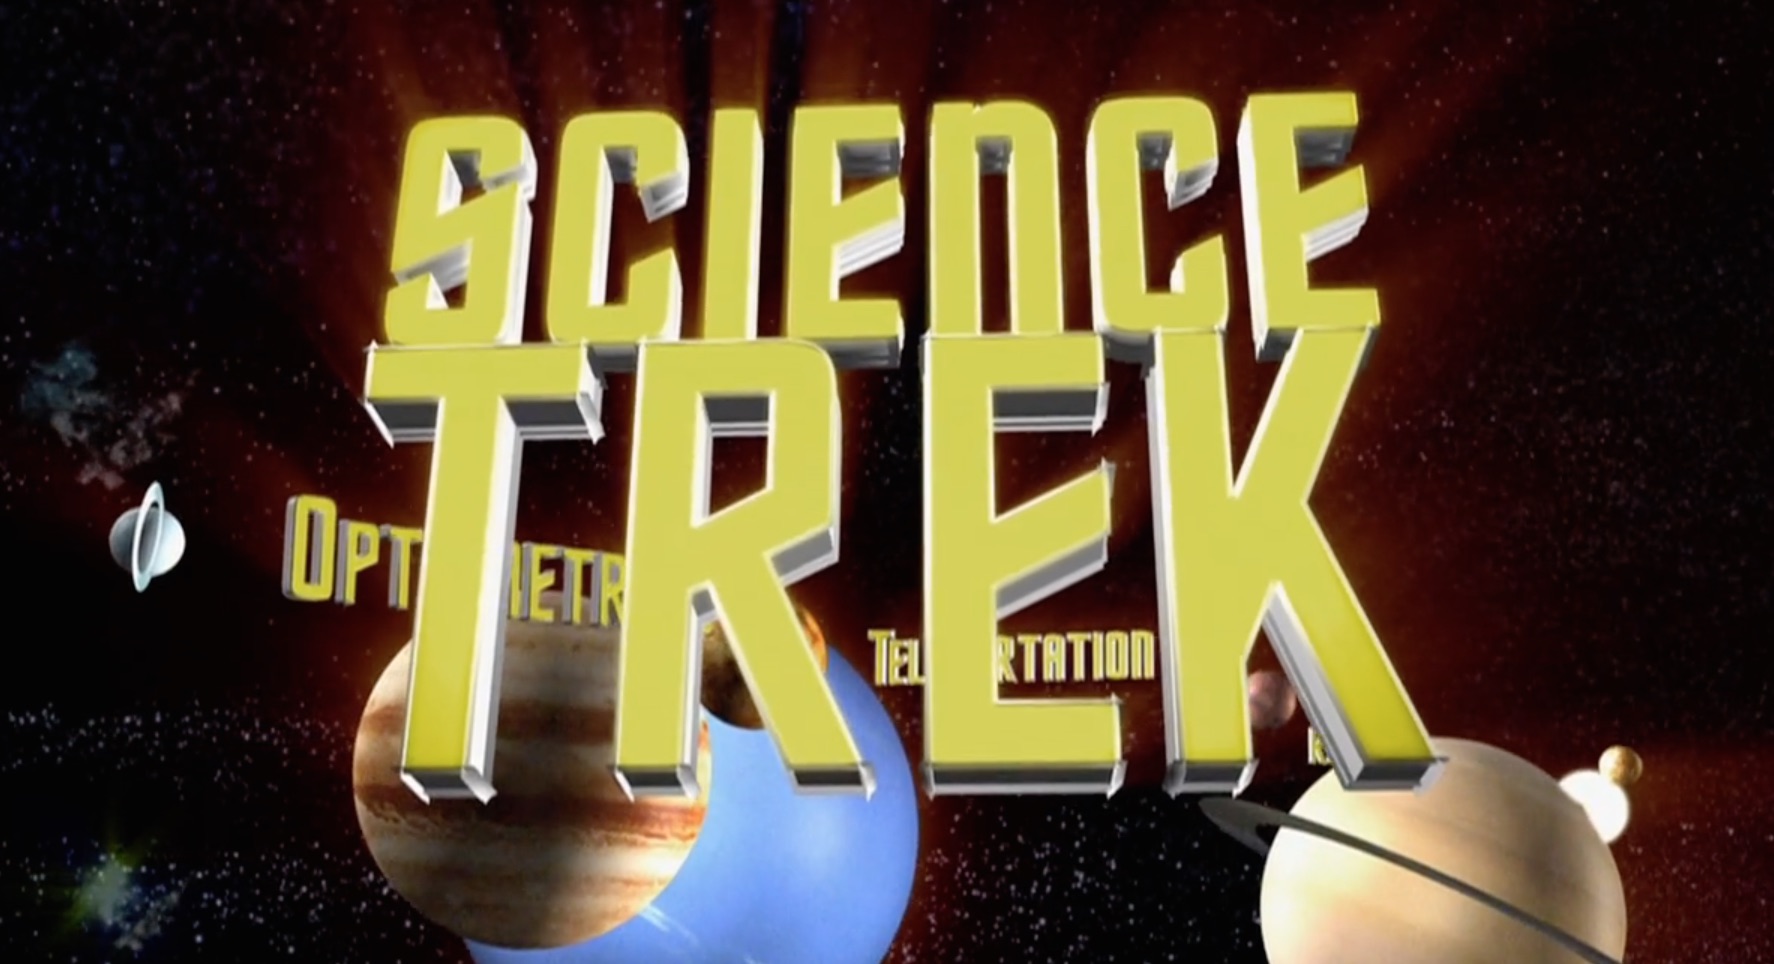 Science Trek